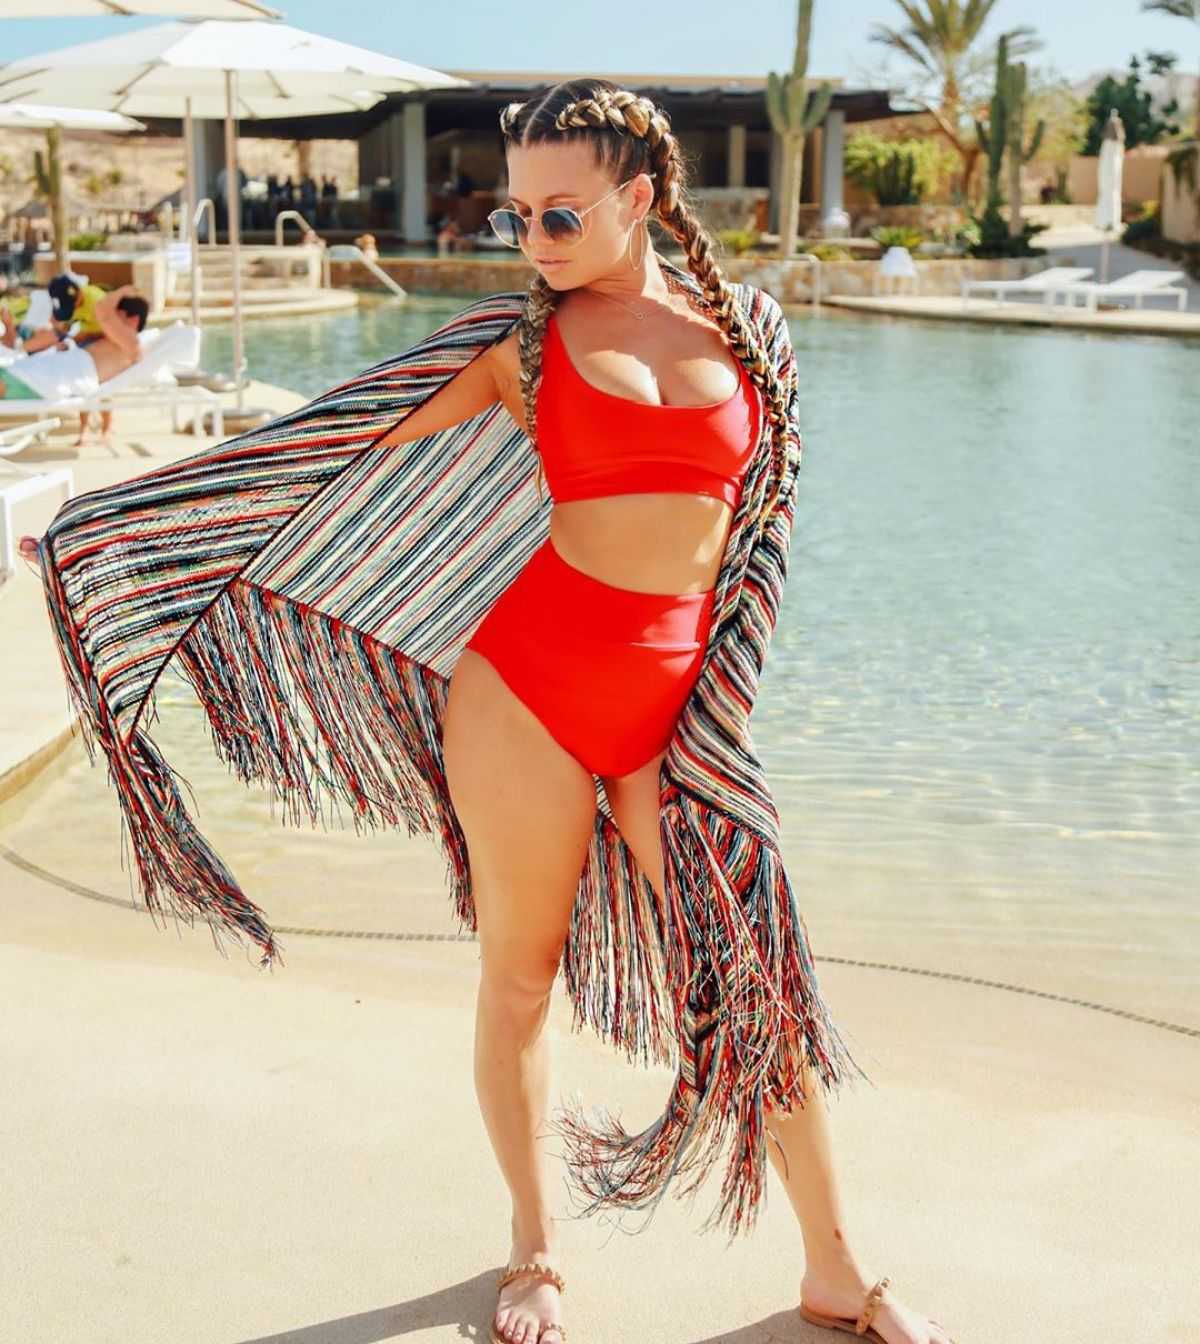 CHANEL WEST COAST in Bikini - Instagram Photos 07/25/2019. 